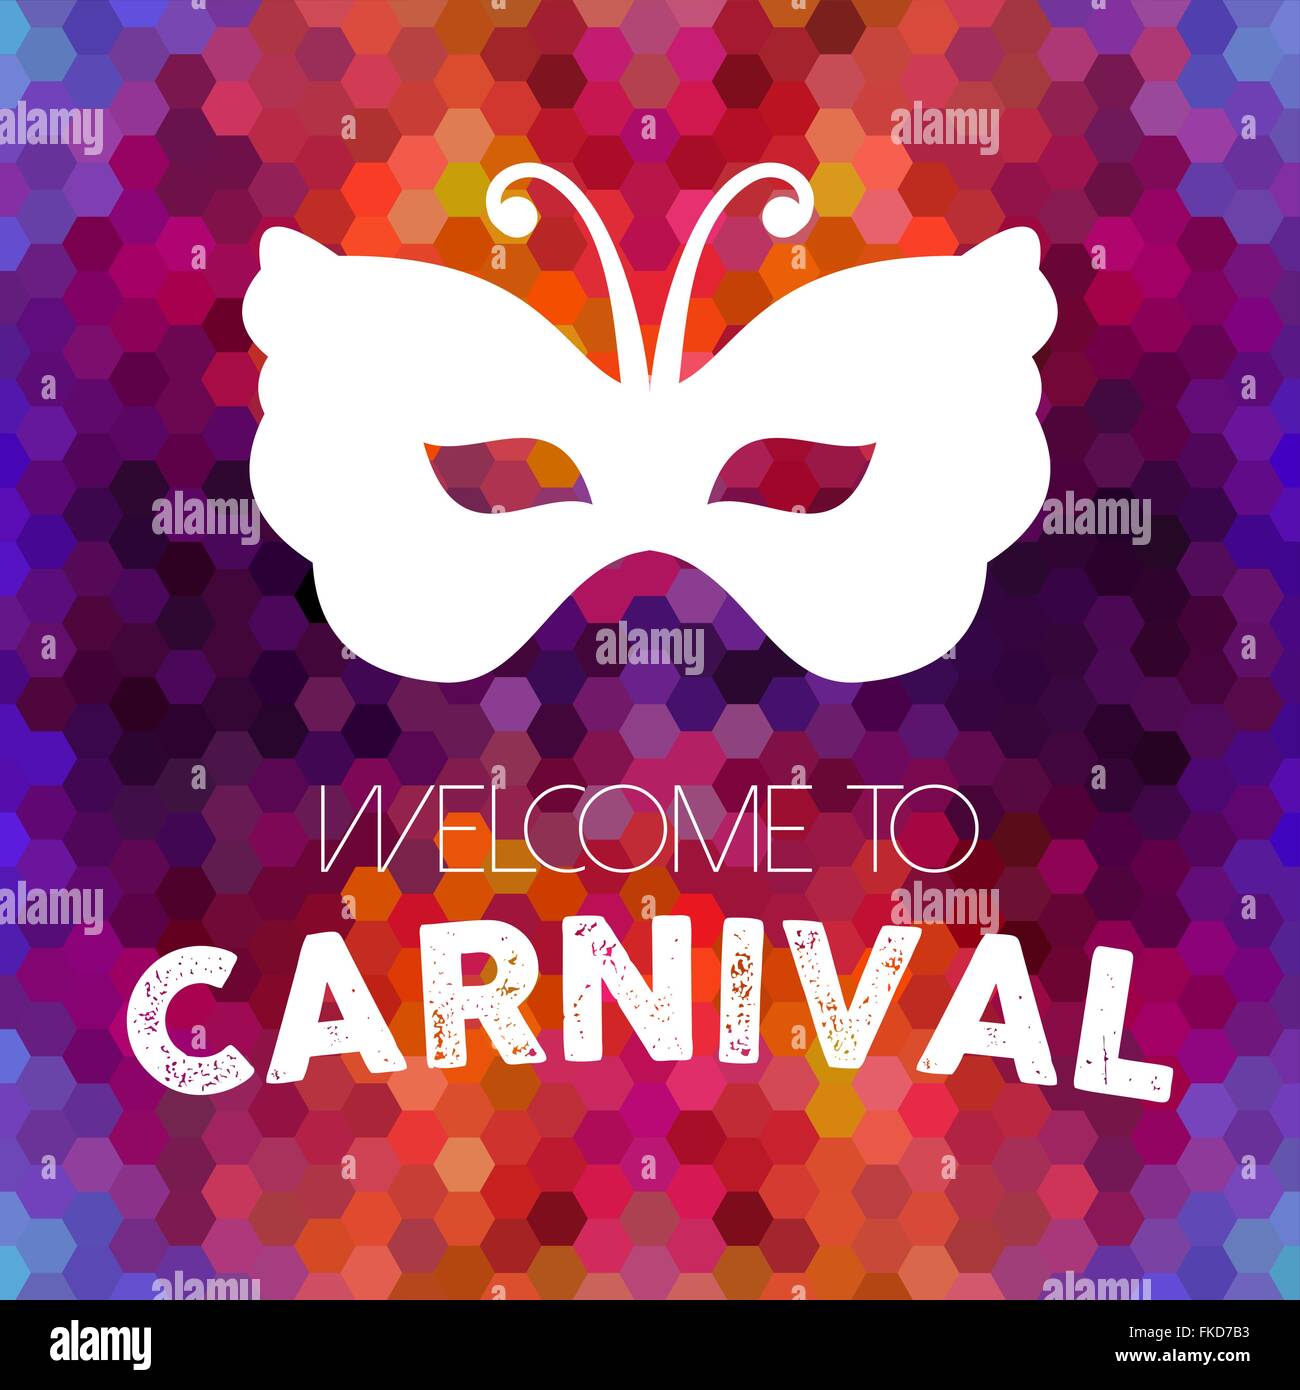 Bienvenue à carnival, design vintage masque papillon coloré sur fond d'abeilles. Vecteur EPS10. Illustration de Vecteur